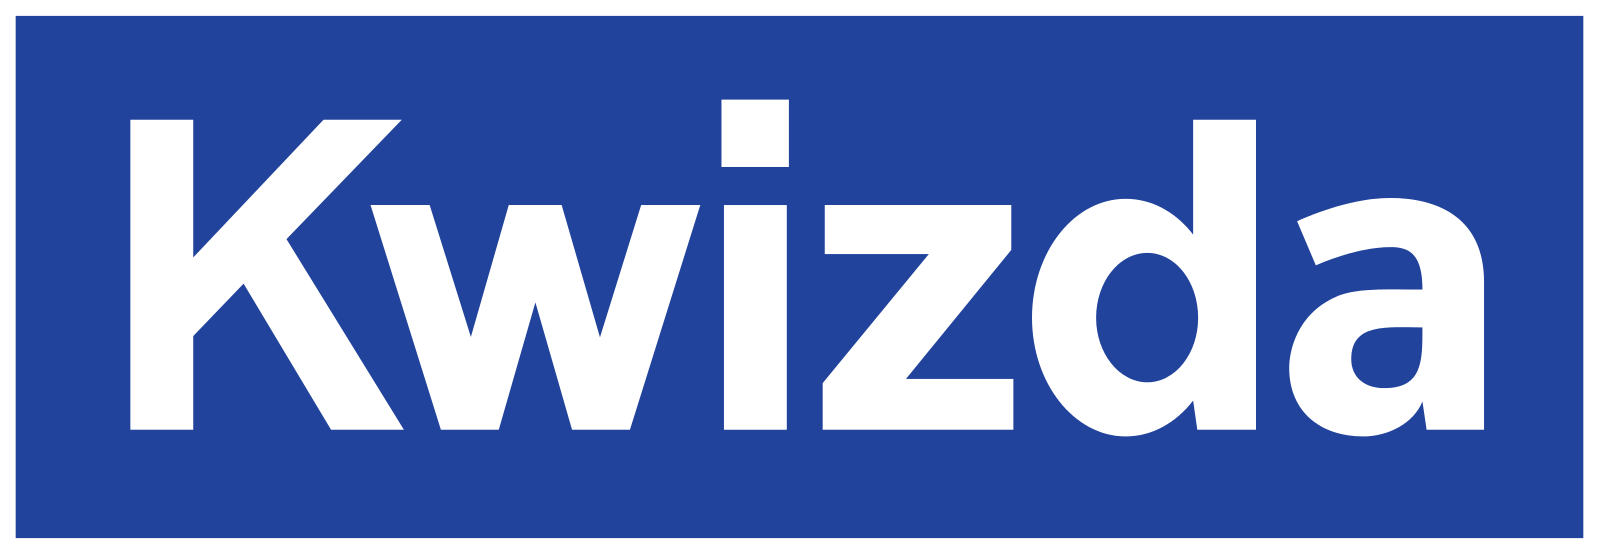 kwizda-customer-logo